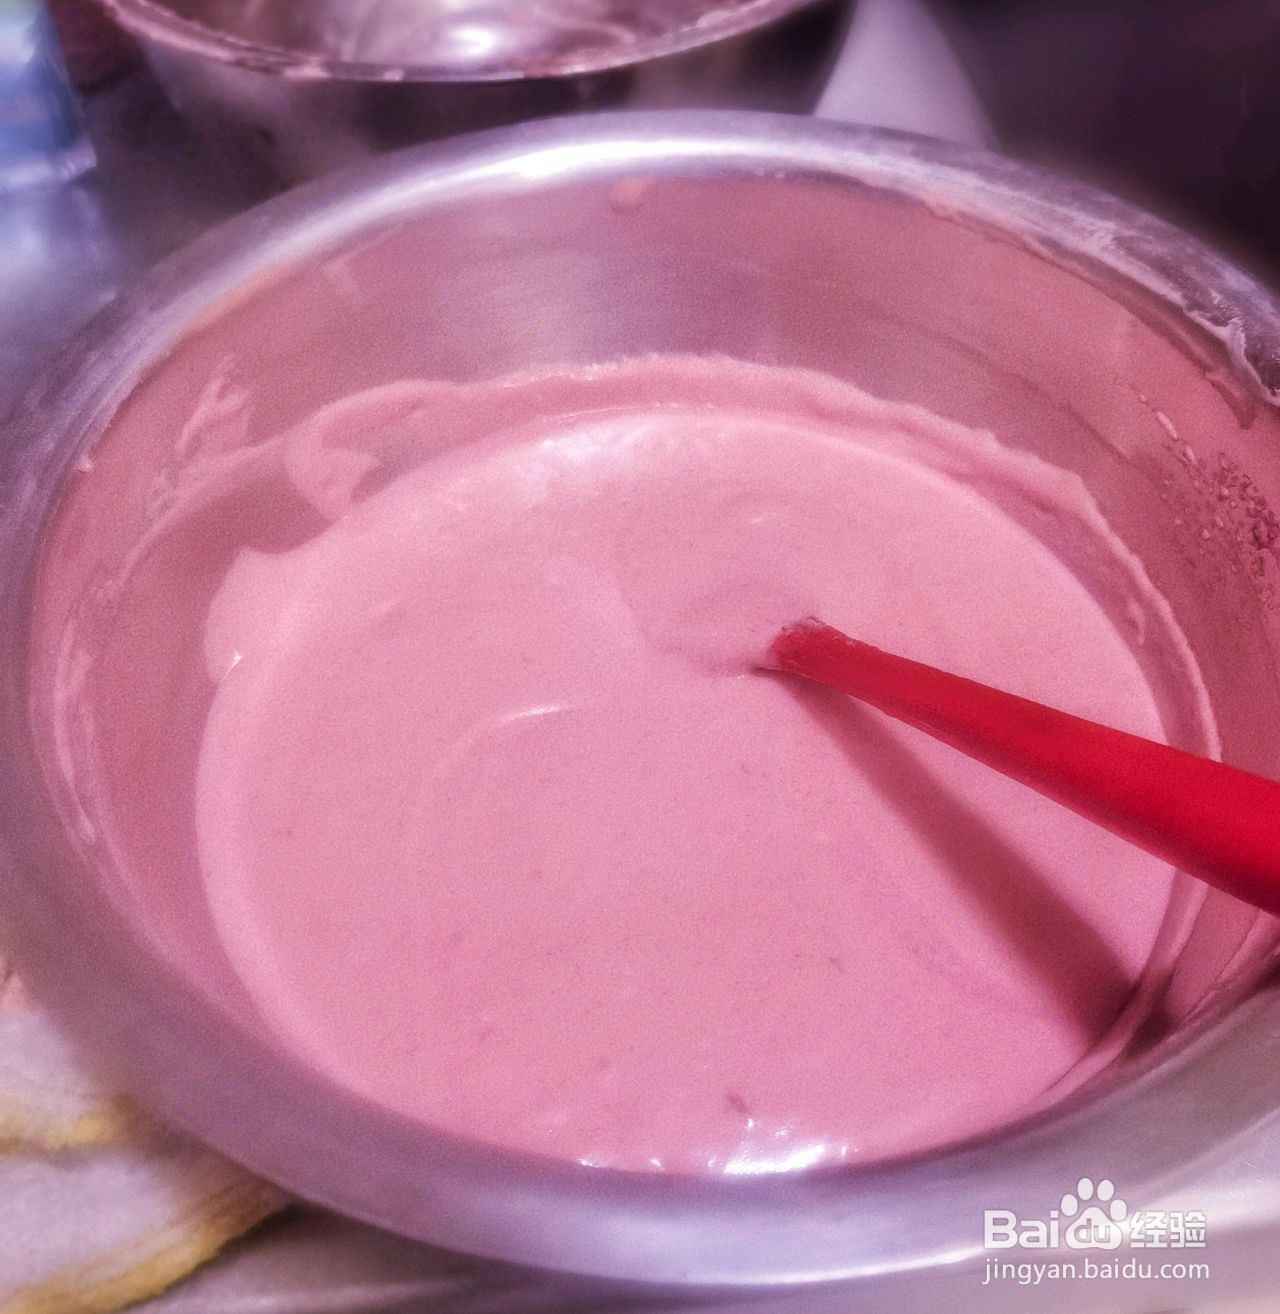 粉嫩可爱的草莓麻薯泡芙的做法